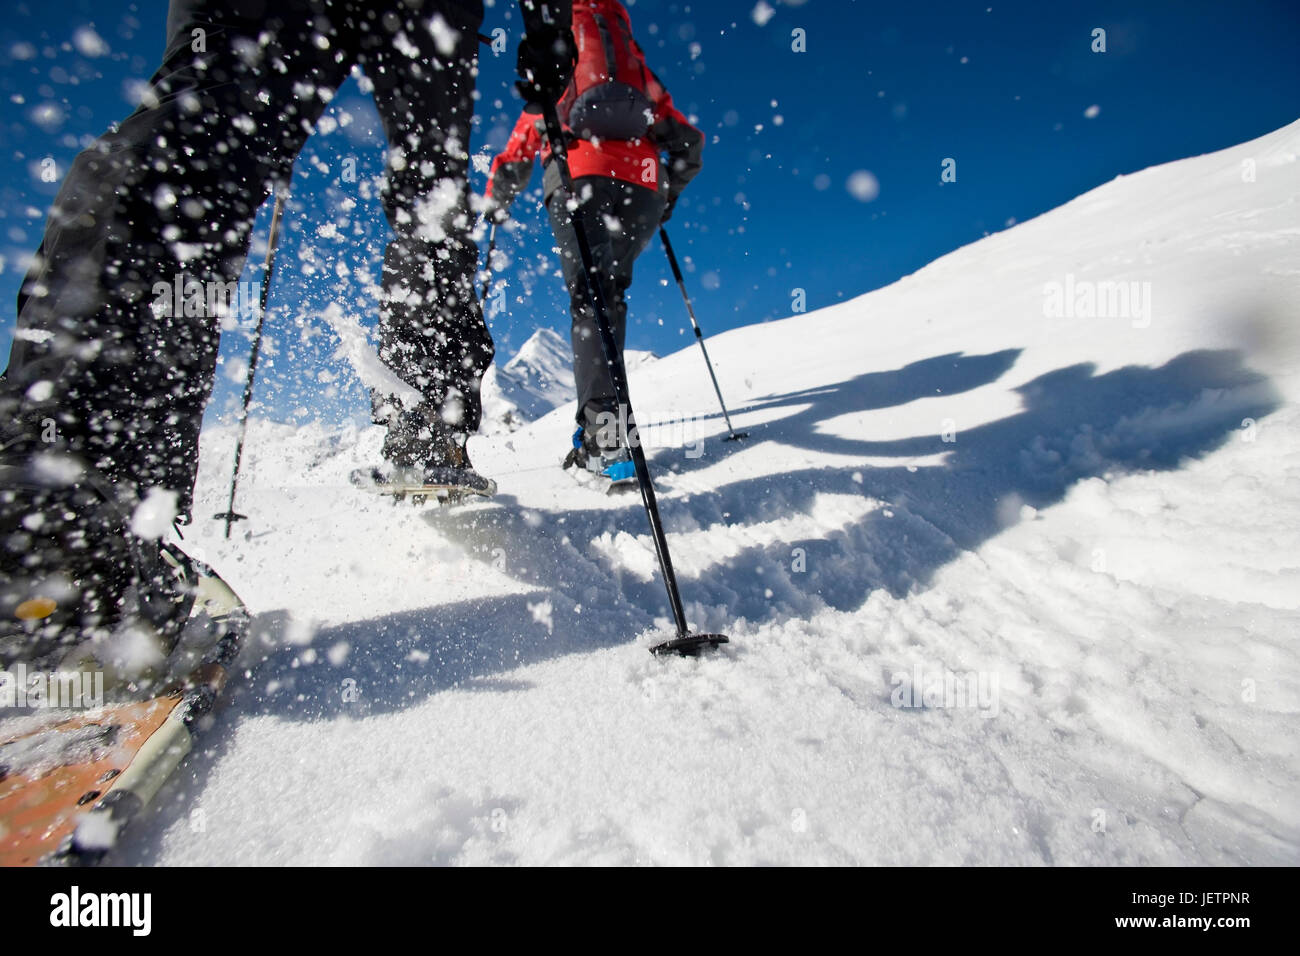 Snowy shoe walking, rise to the summit, Grossglockner, Austria, Schneeschuhwandern, Aufstieg zum Gipfel, Österreich Stock Photo